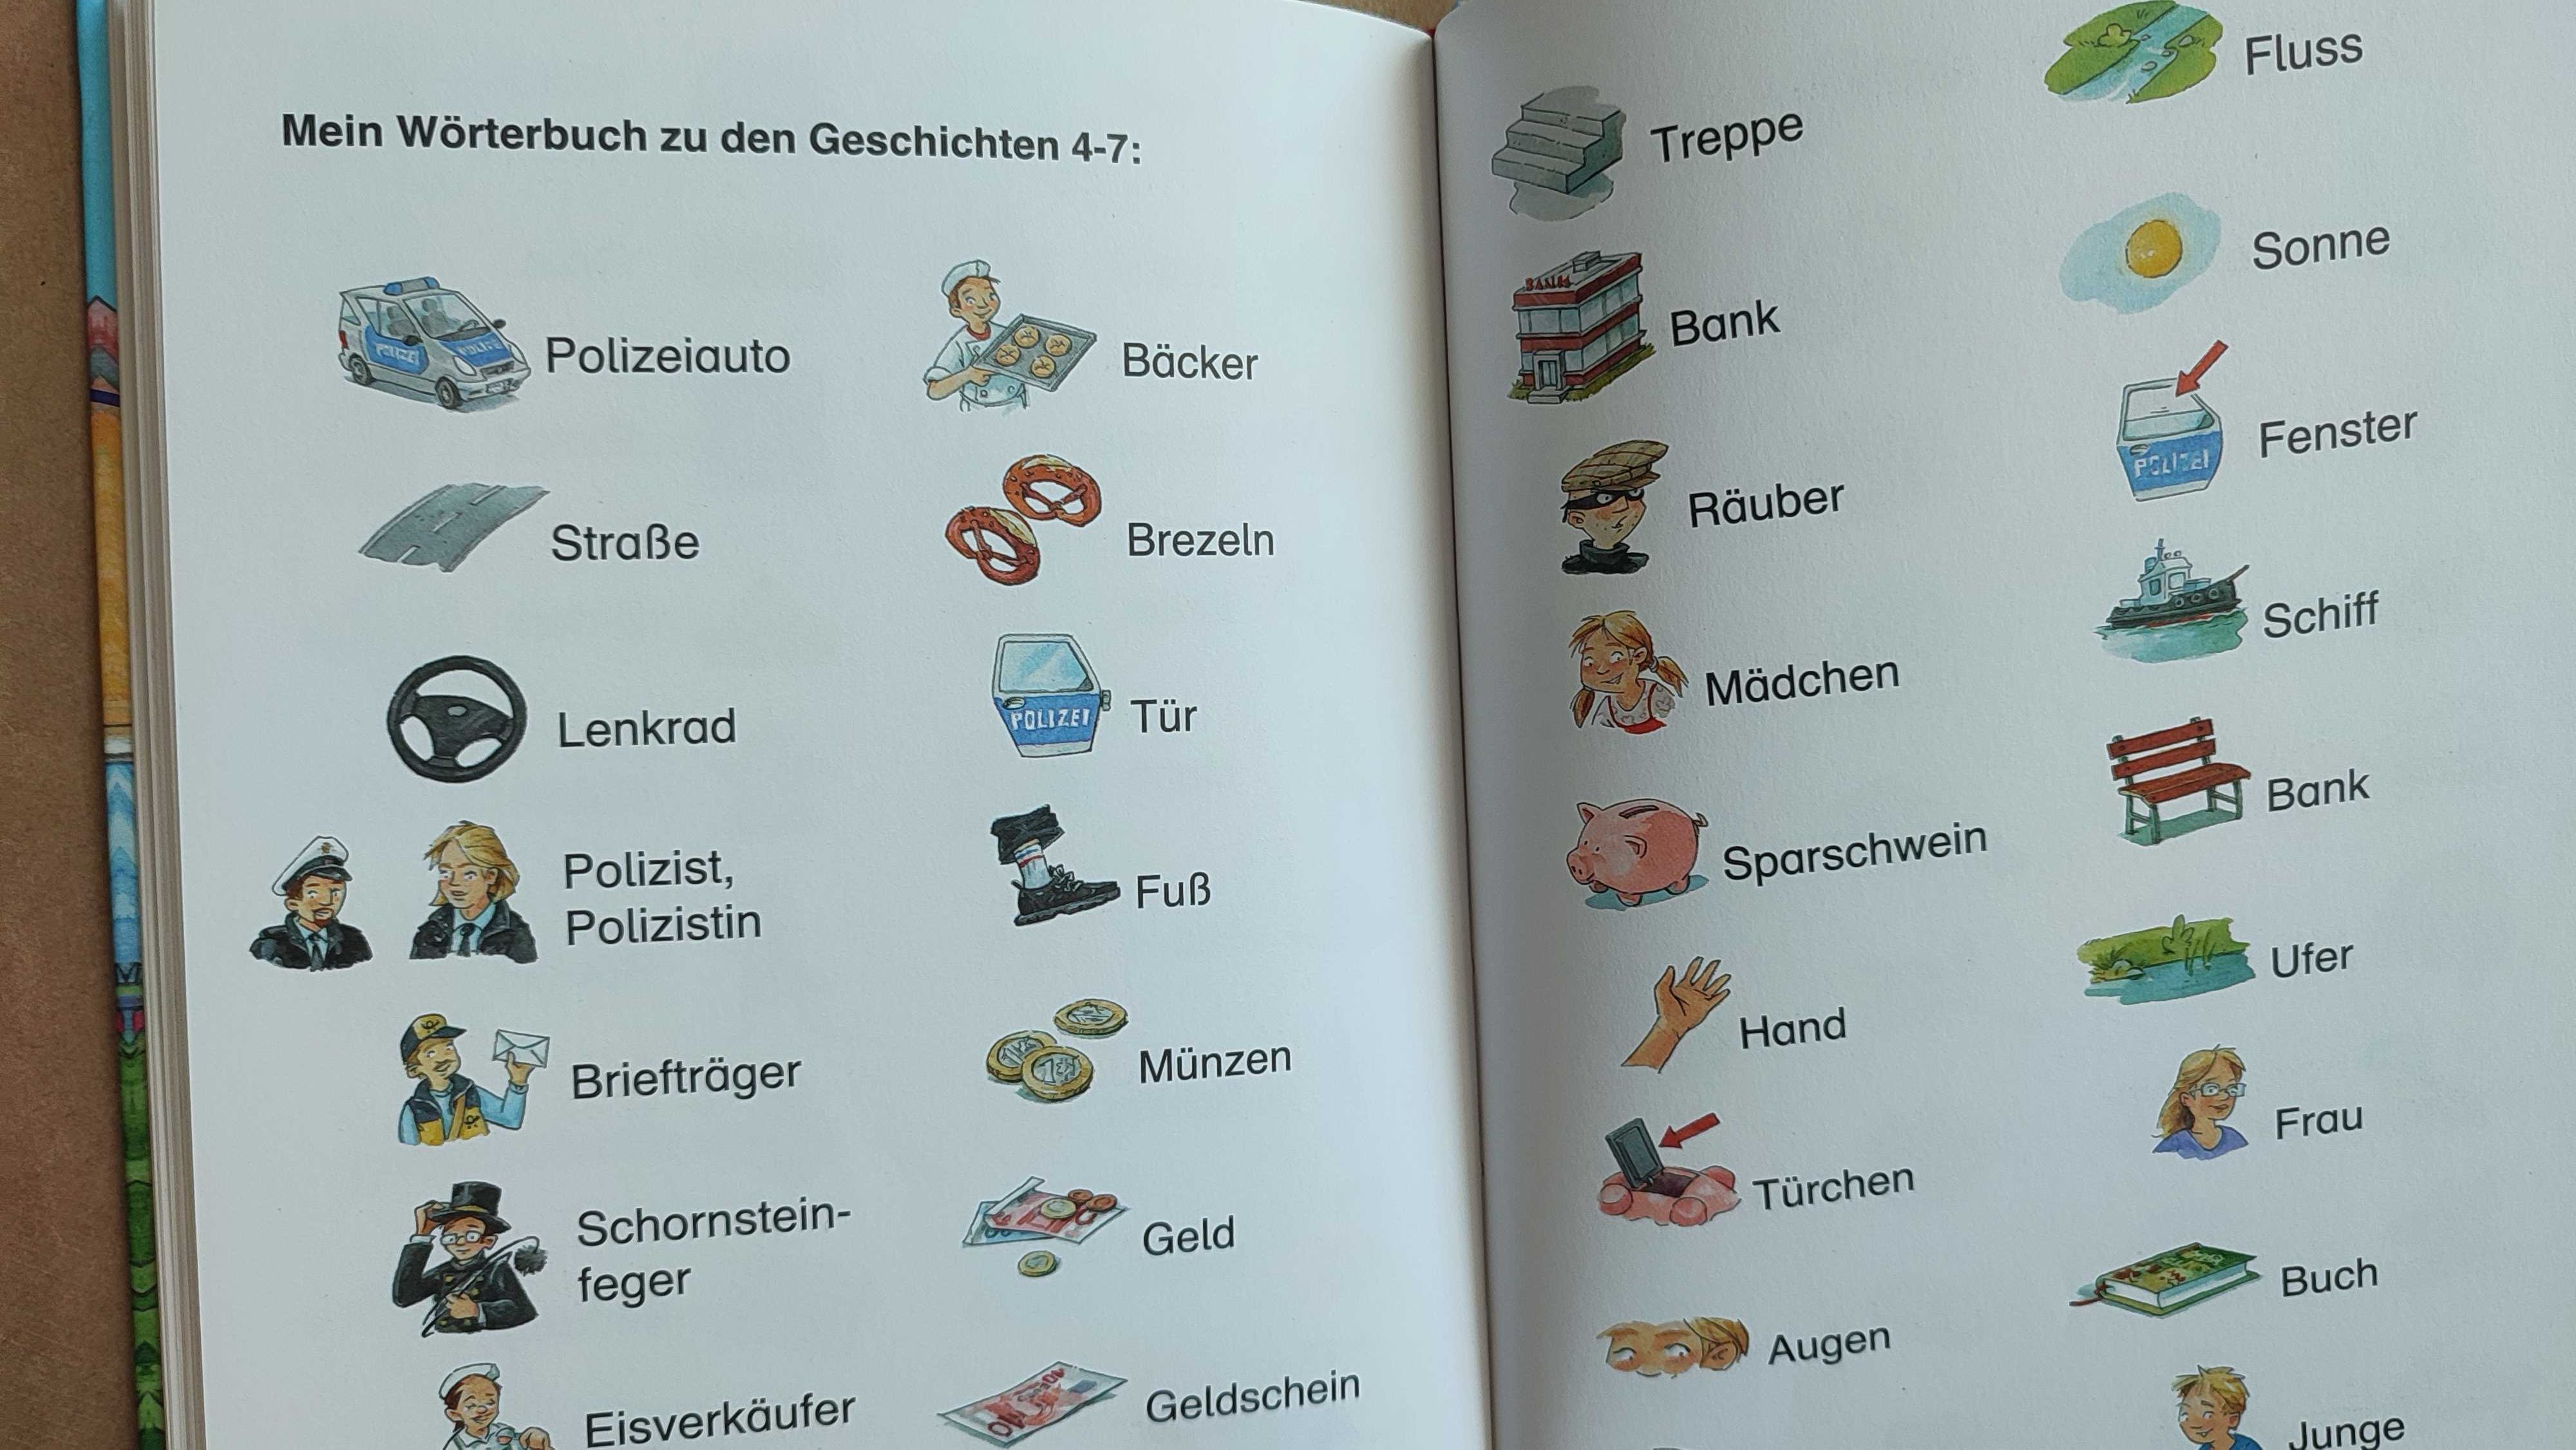 Детский детектив на немецком "Учимся читать с картинками"